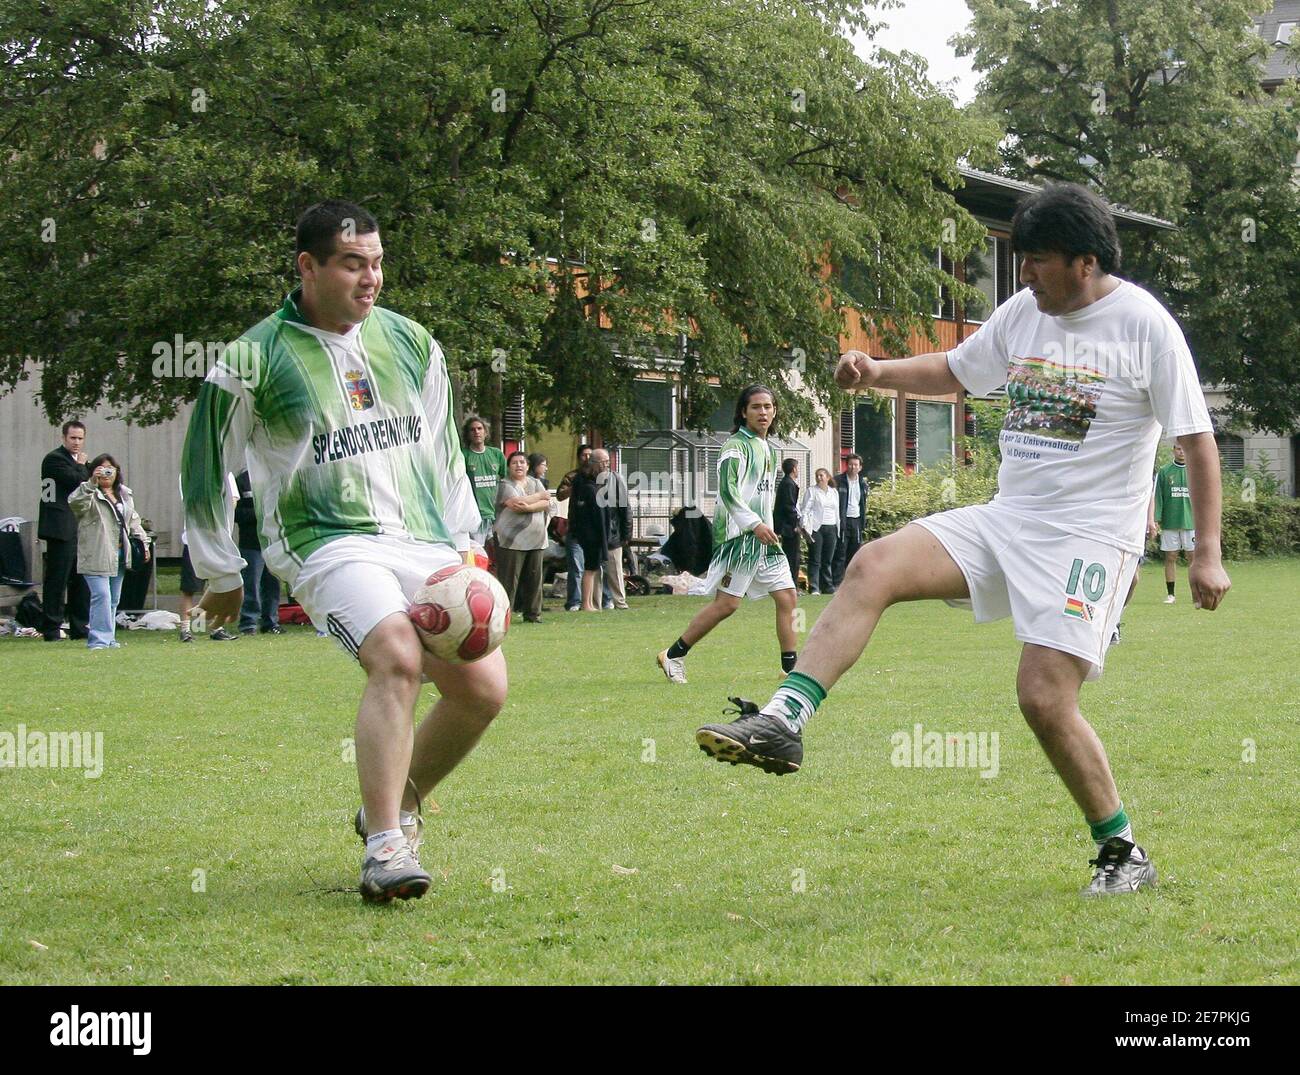 El presidente boliviano Evo Morales (R) juega al fútbol con expatriados bolivianos en Zurich el 28 de junio de 2007. Morales se reunió con el de la FIFA Sepp Blatter el